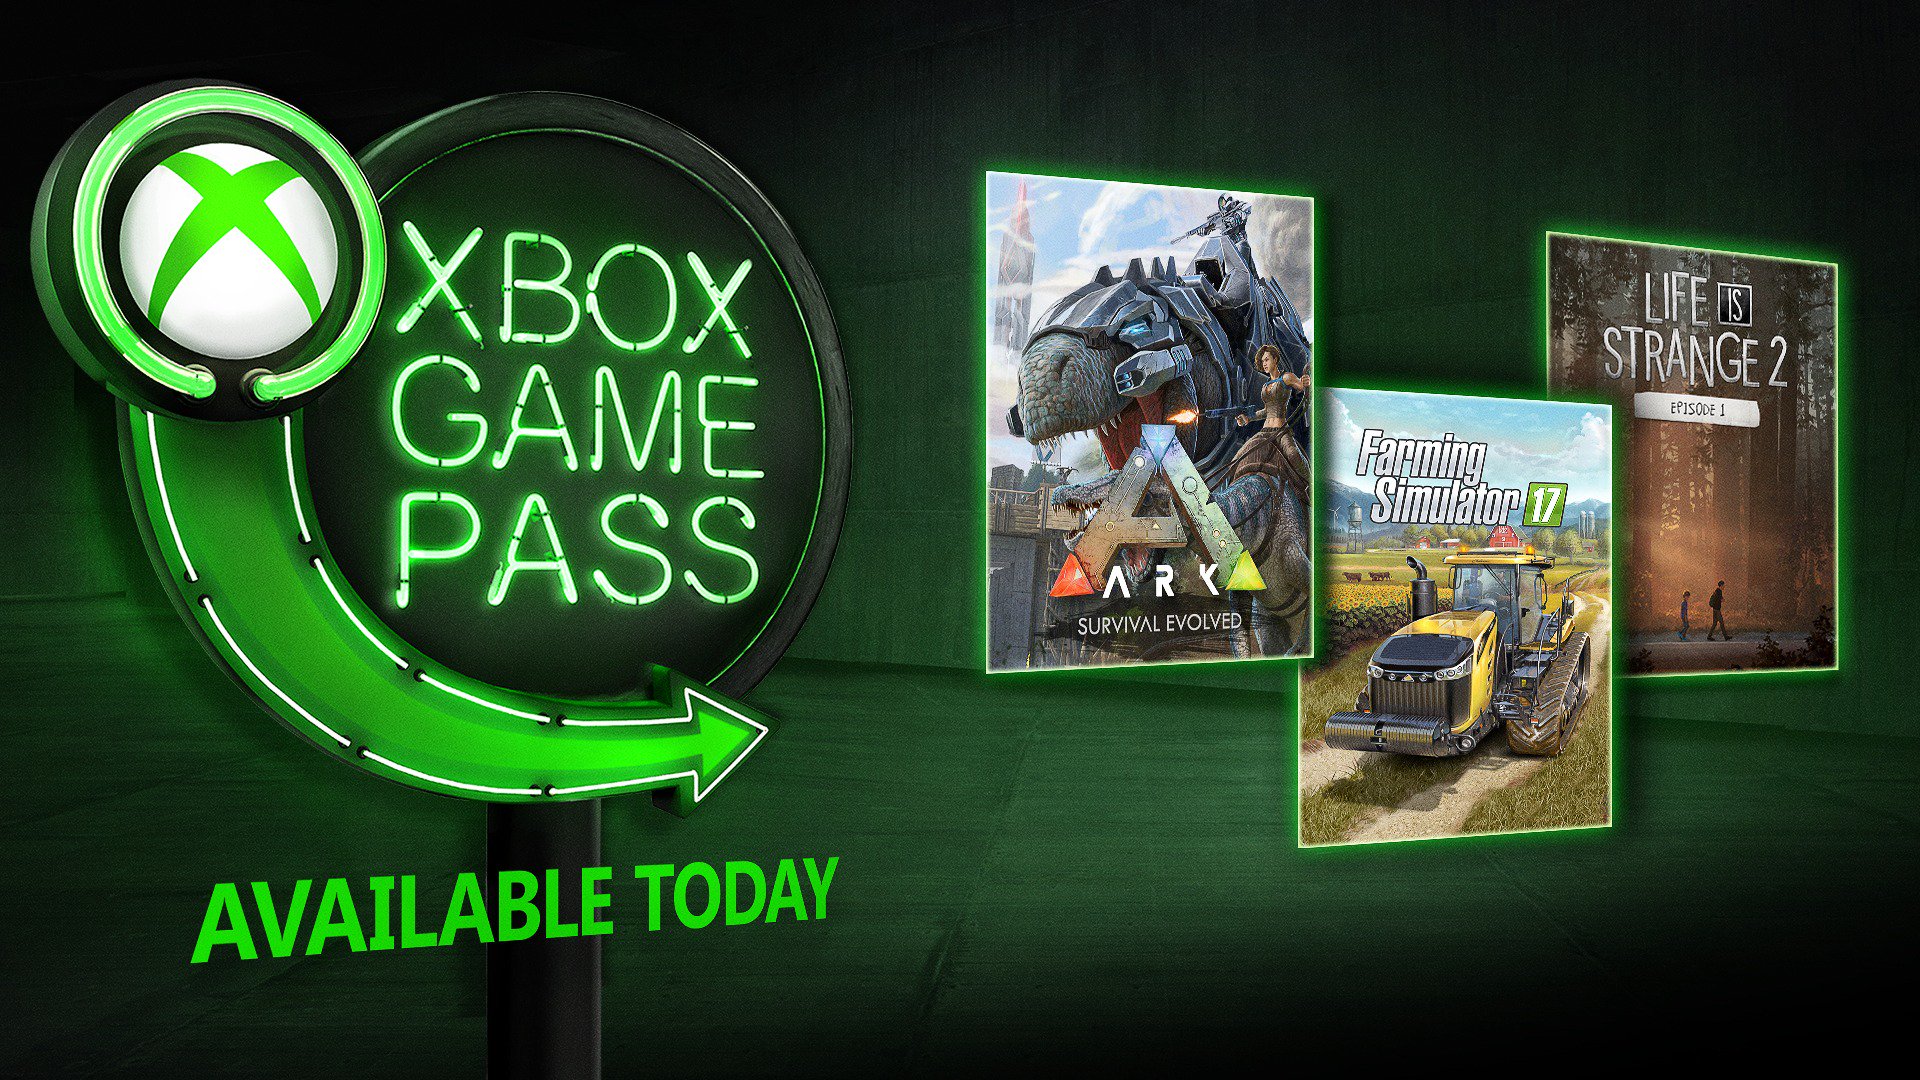 Xbox игры жизни. Лучшие игры Xbox game Pass. Игры на двоих в Xbox game Pass. Реклама хбокс игры. Лучшее в game pass